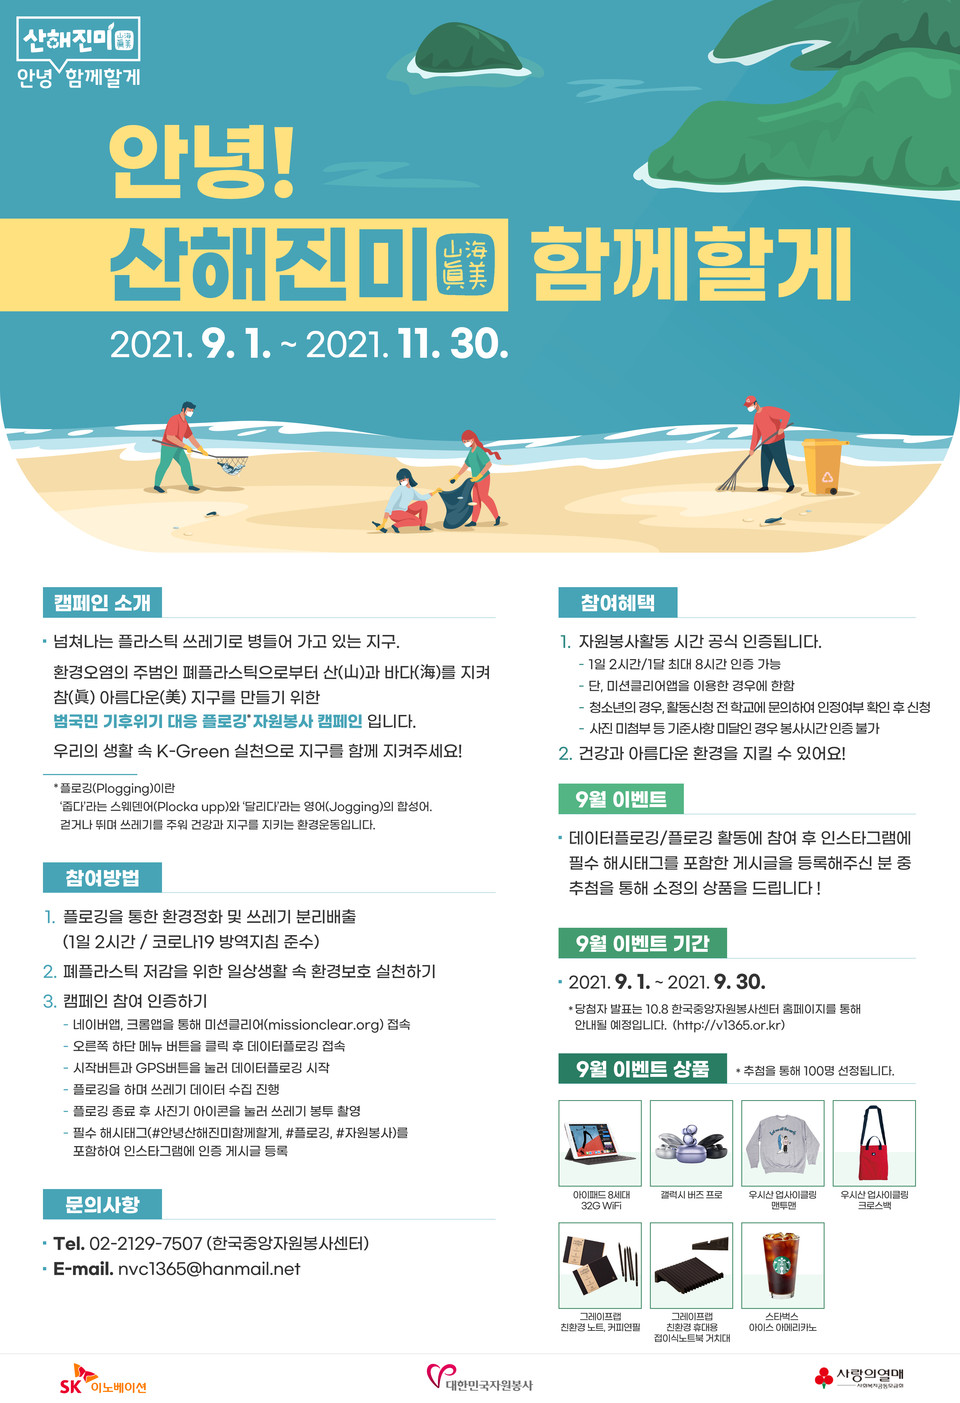 한국중앙자원봉사센터와 SK이노베이션, 사회복지공동모금회가 공동으로 추진하는 기후위기 대응 '안녕!산해진미 함께할게'  안내 포스터.